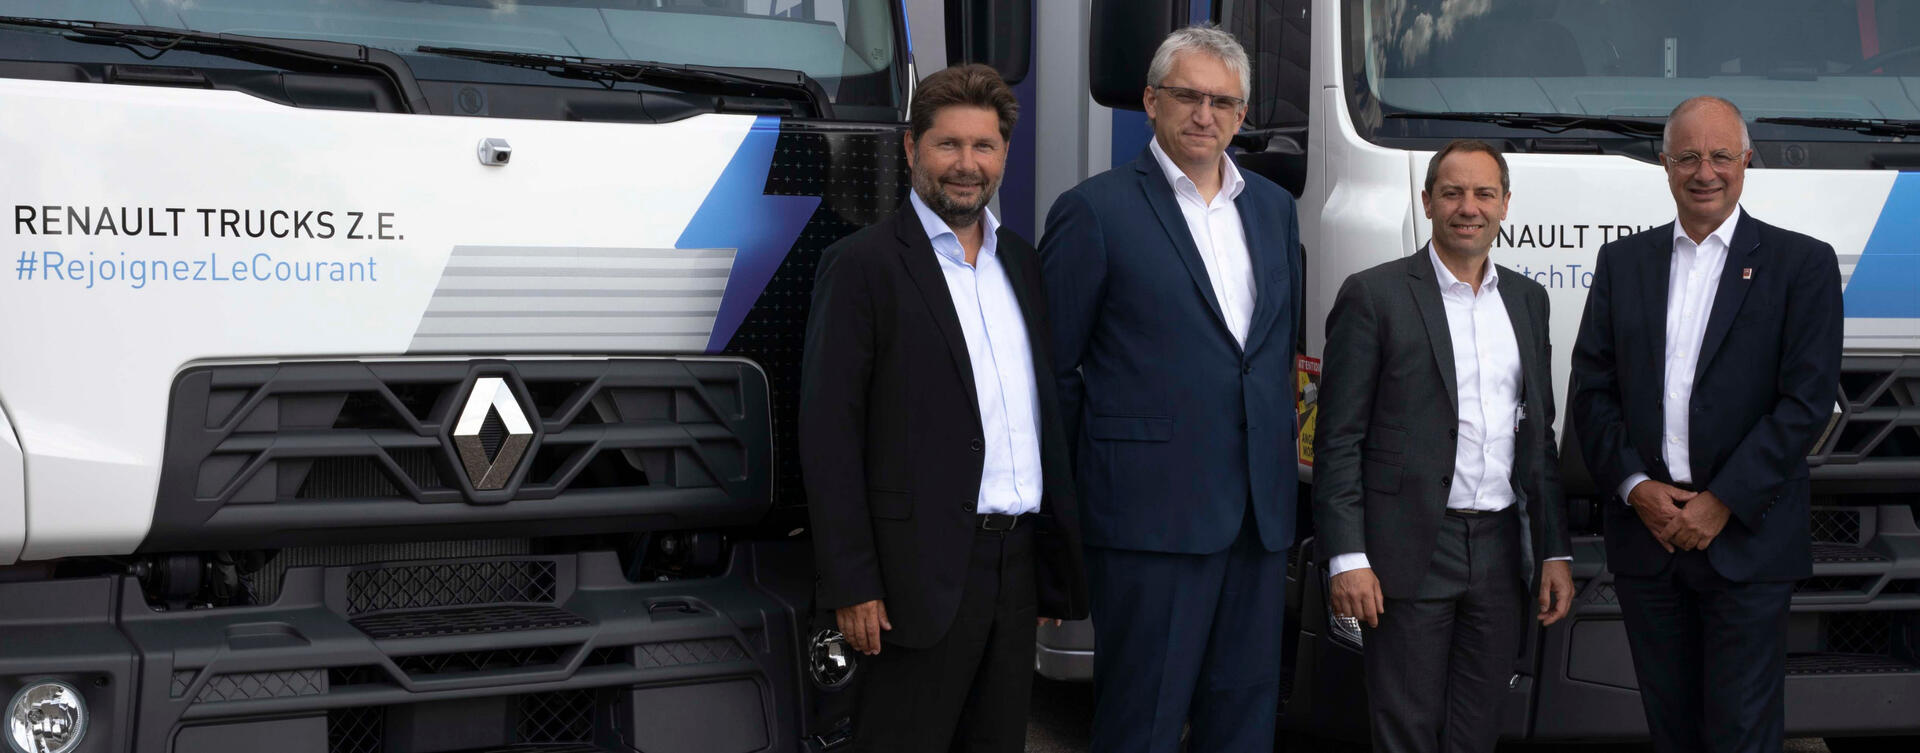 Urby zet Renault Trucks D Z.E. in voor stadsdistributie